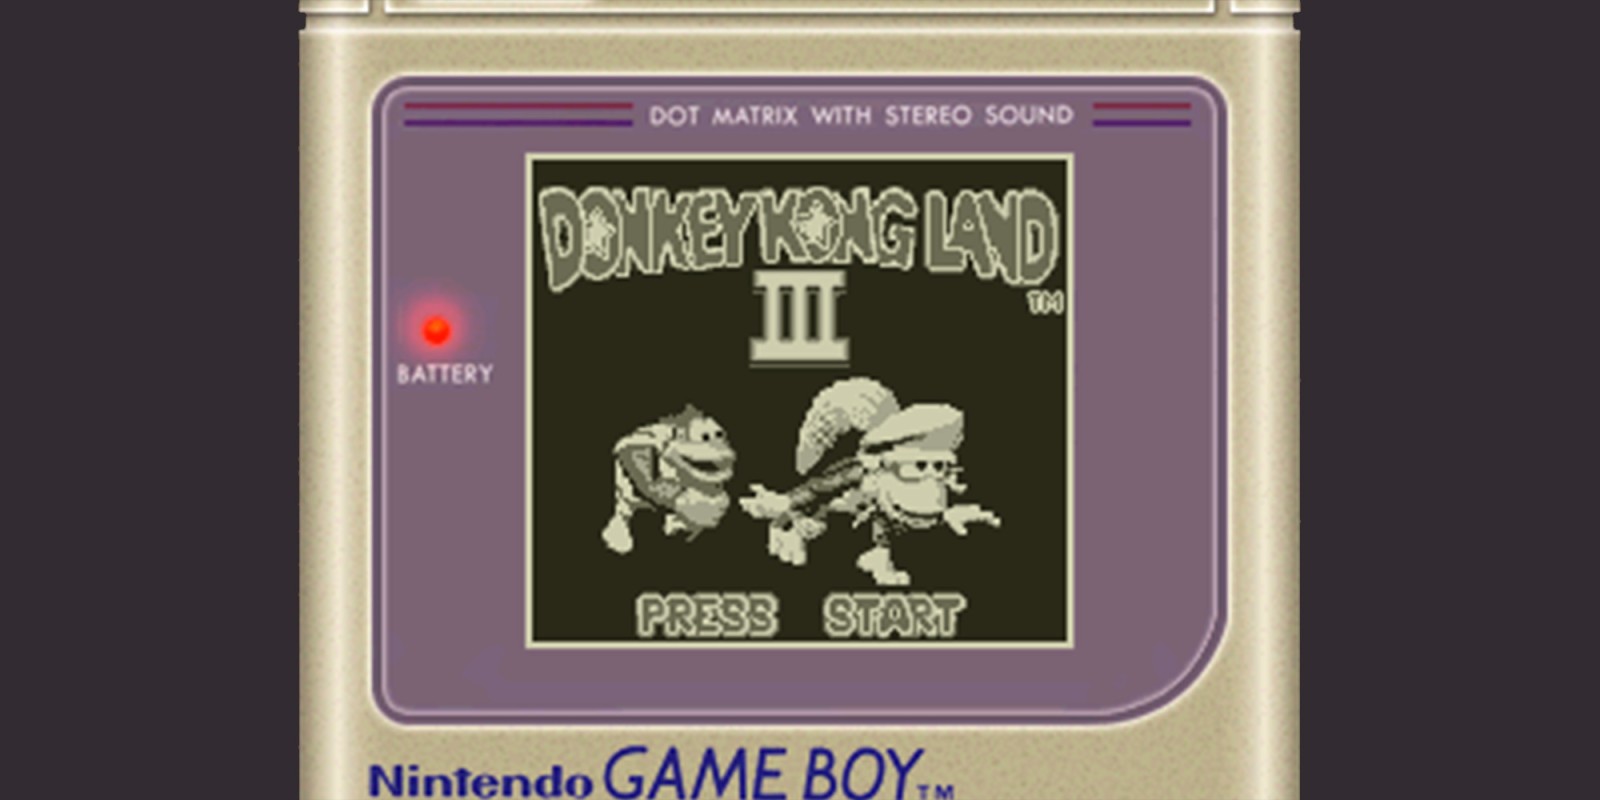 download donkey kong land 3 gameboy